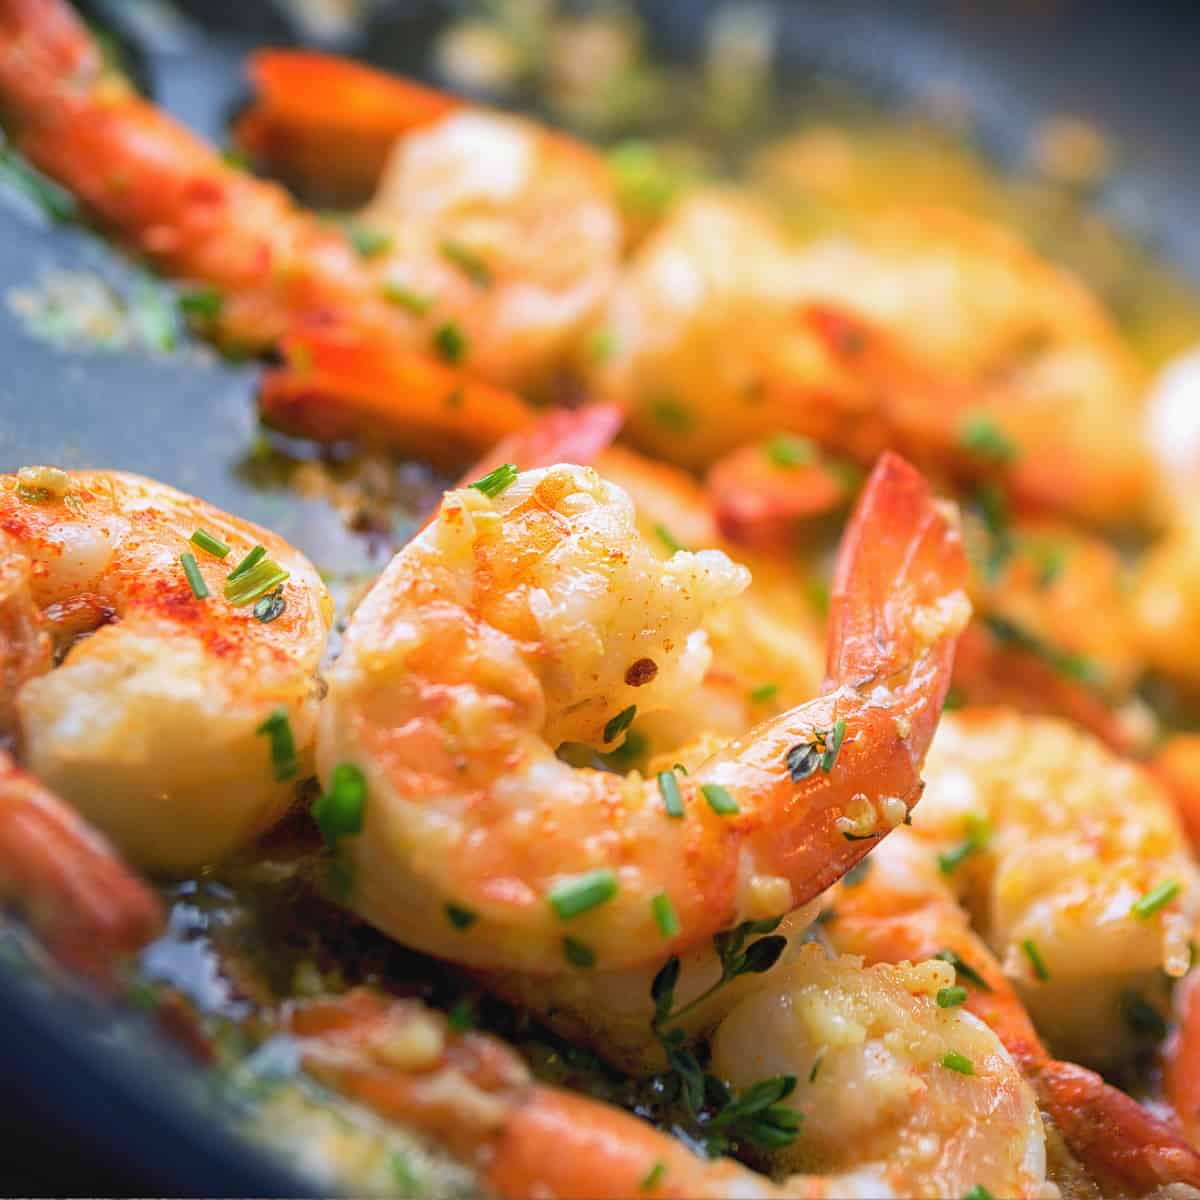 2. Argentine Shrimp Chimichurri - Argentine Red Shrimp Recipes